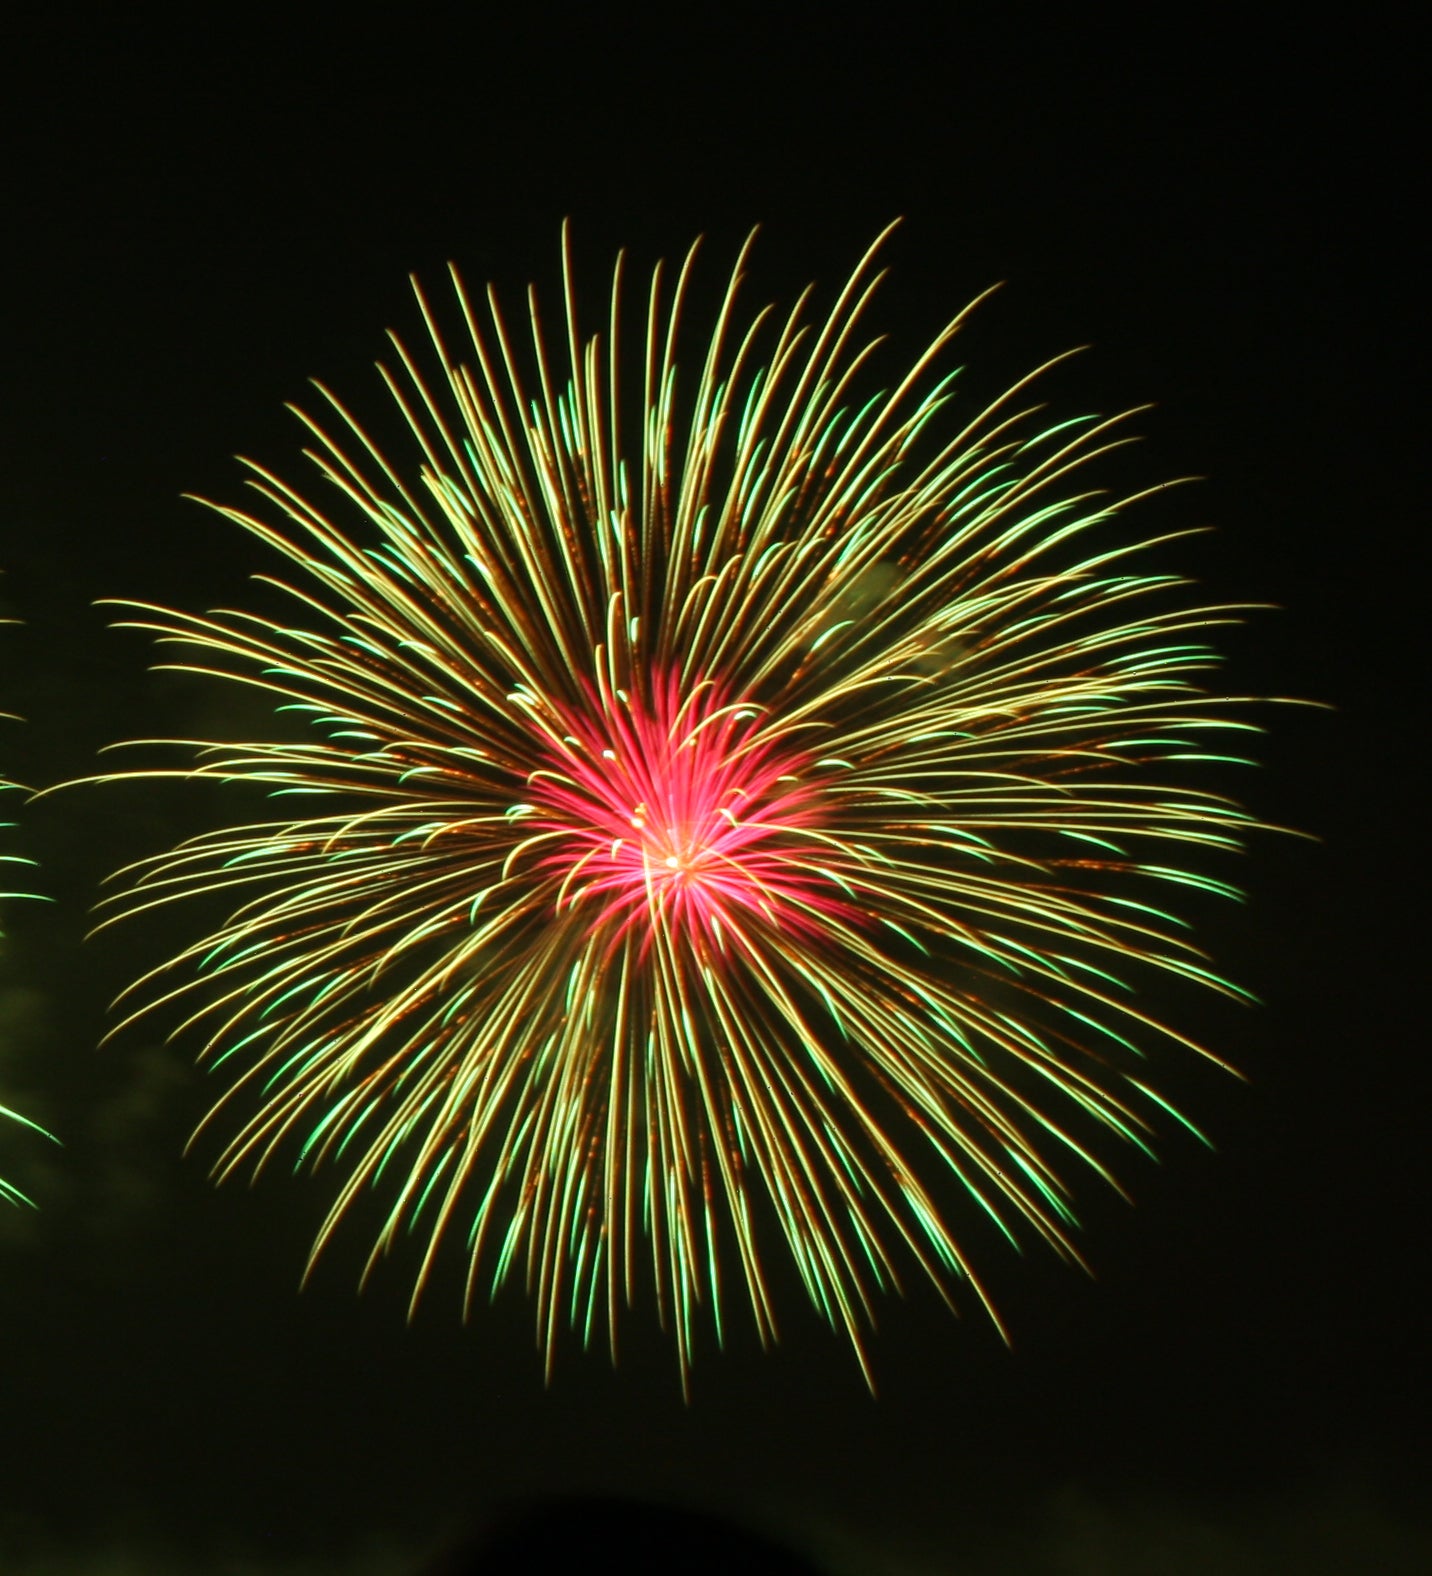 Eastnor Castle - Fireworks Contest Details